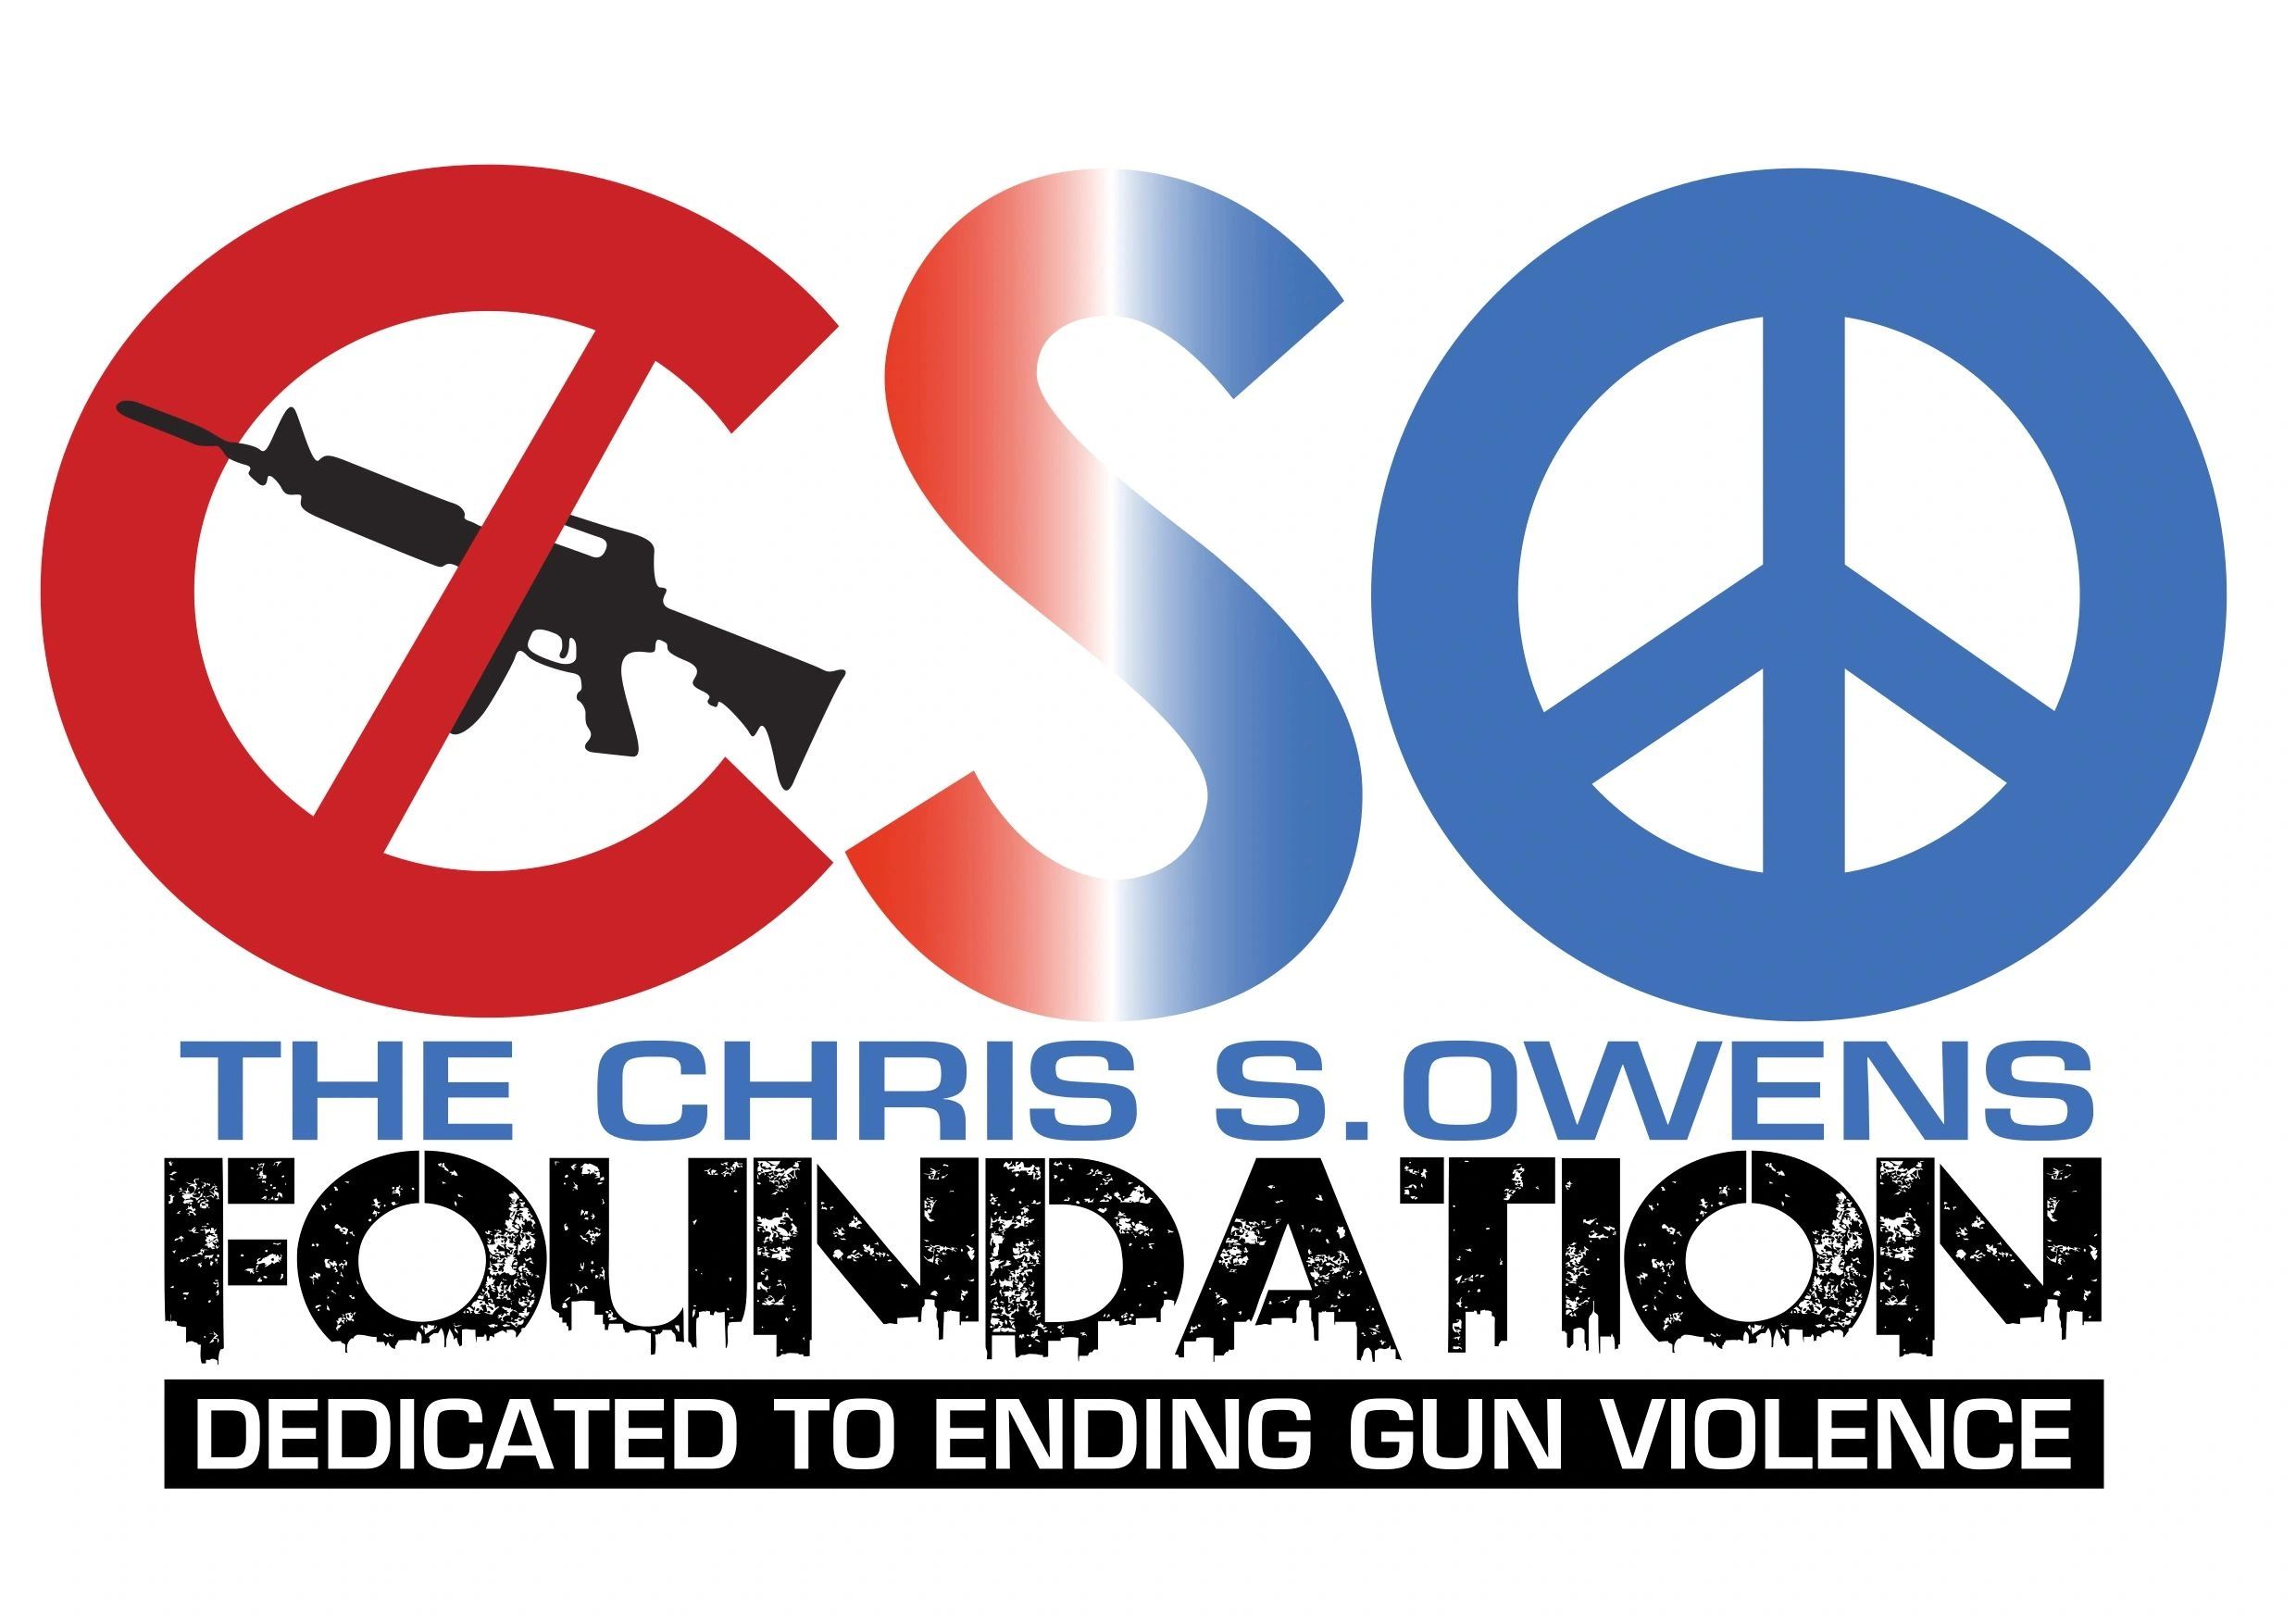 THE CHRIS S. OWENS FOUNDATION LOGO